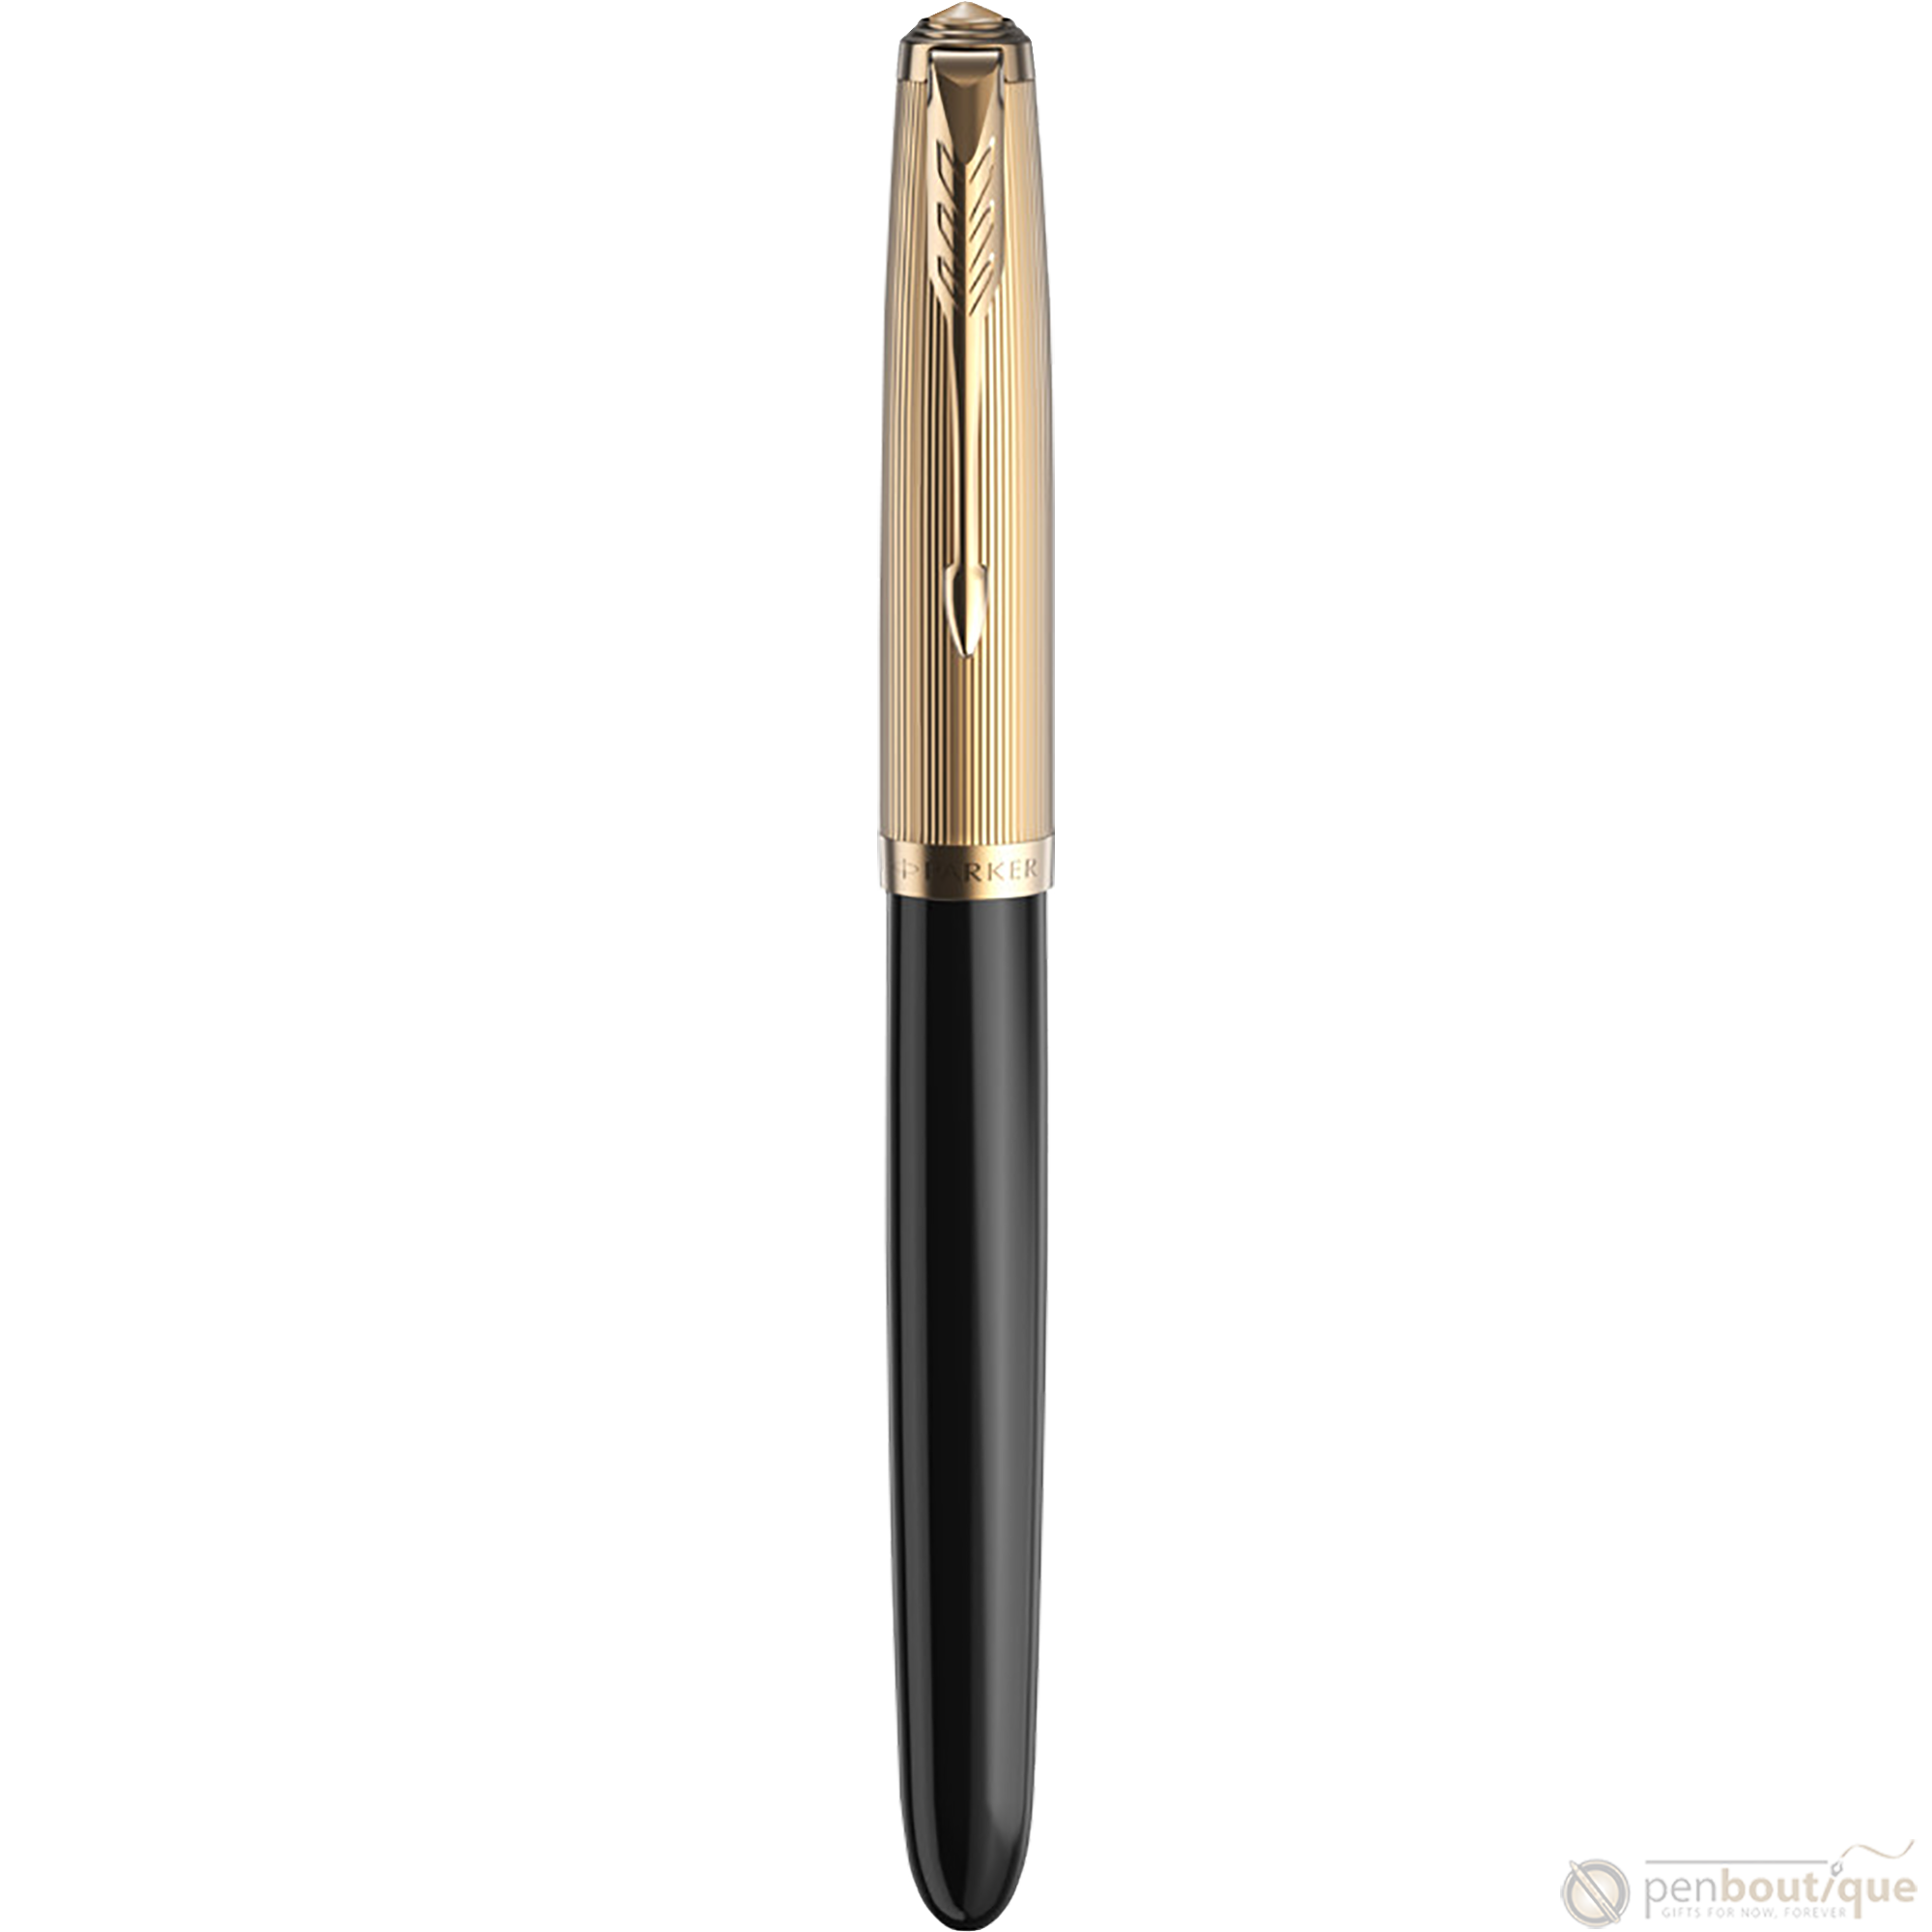 Parker 51 Next Generation Fountain Pen - Deluxe Black - Gold Trim-Pen Boutique Ltd